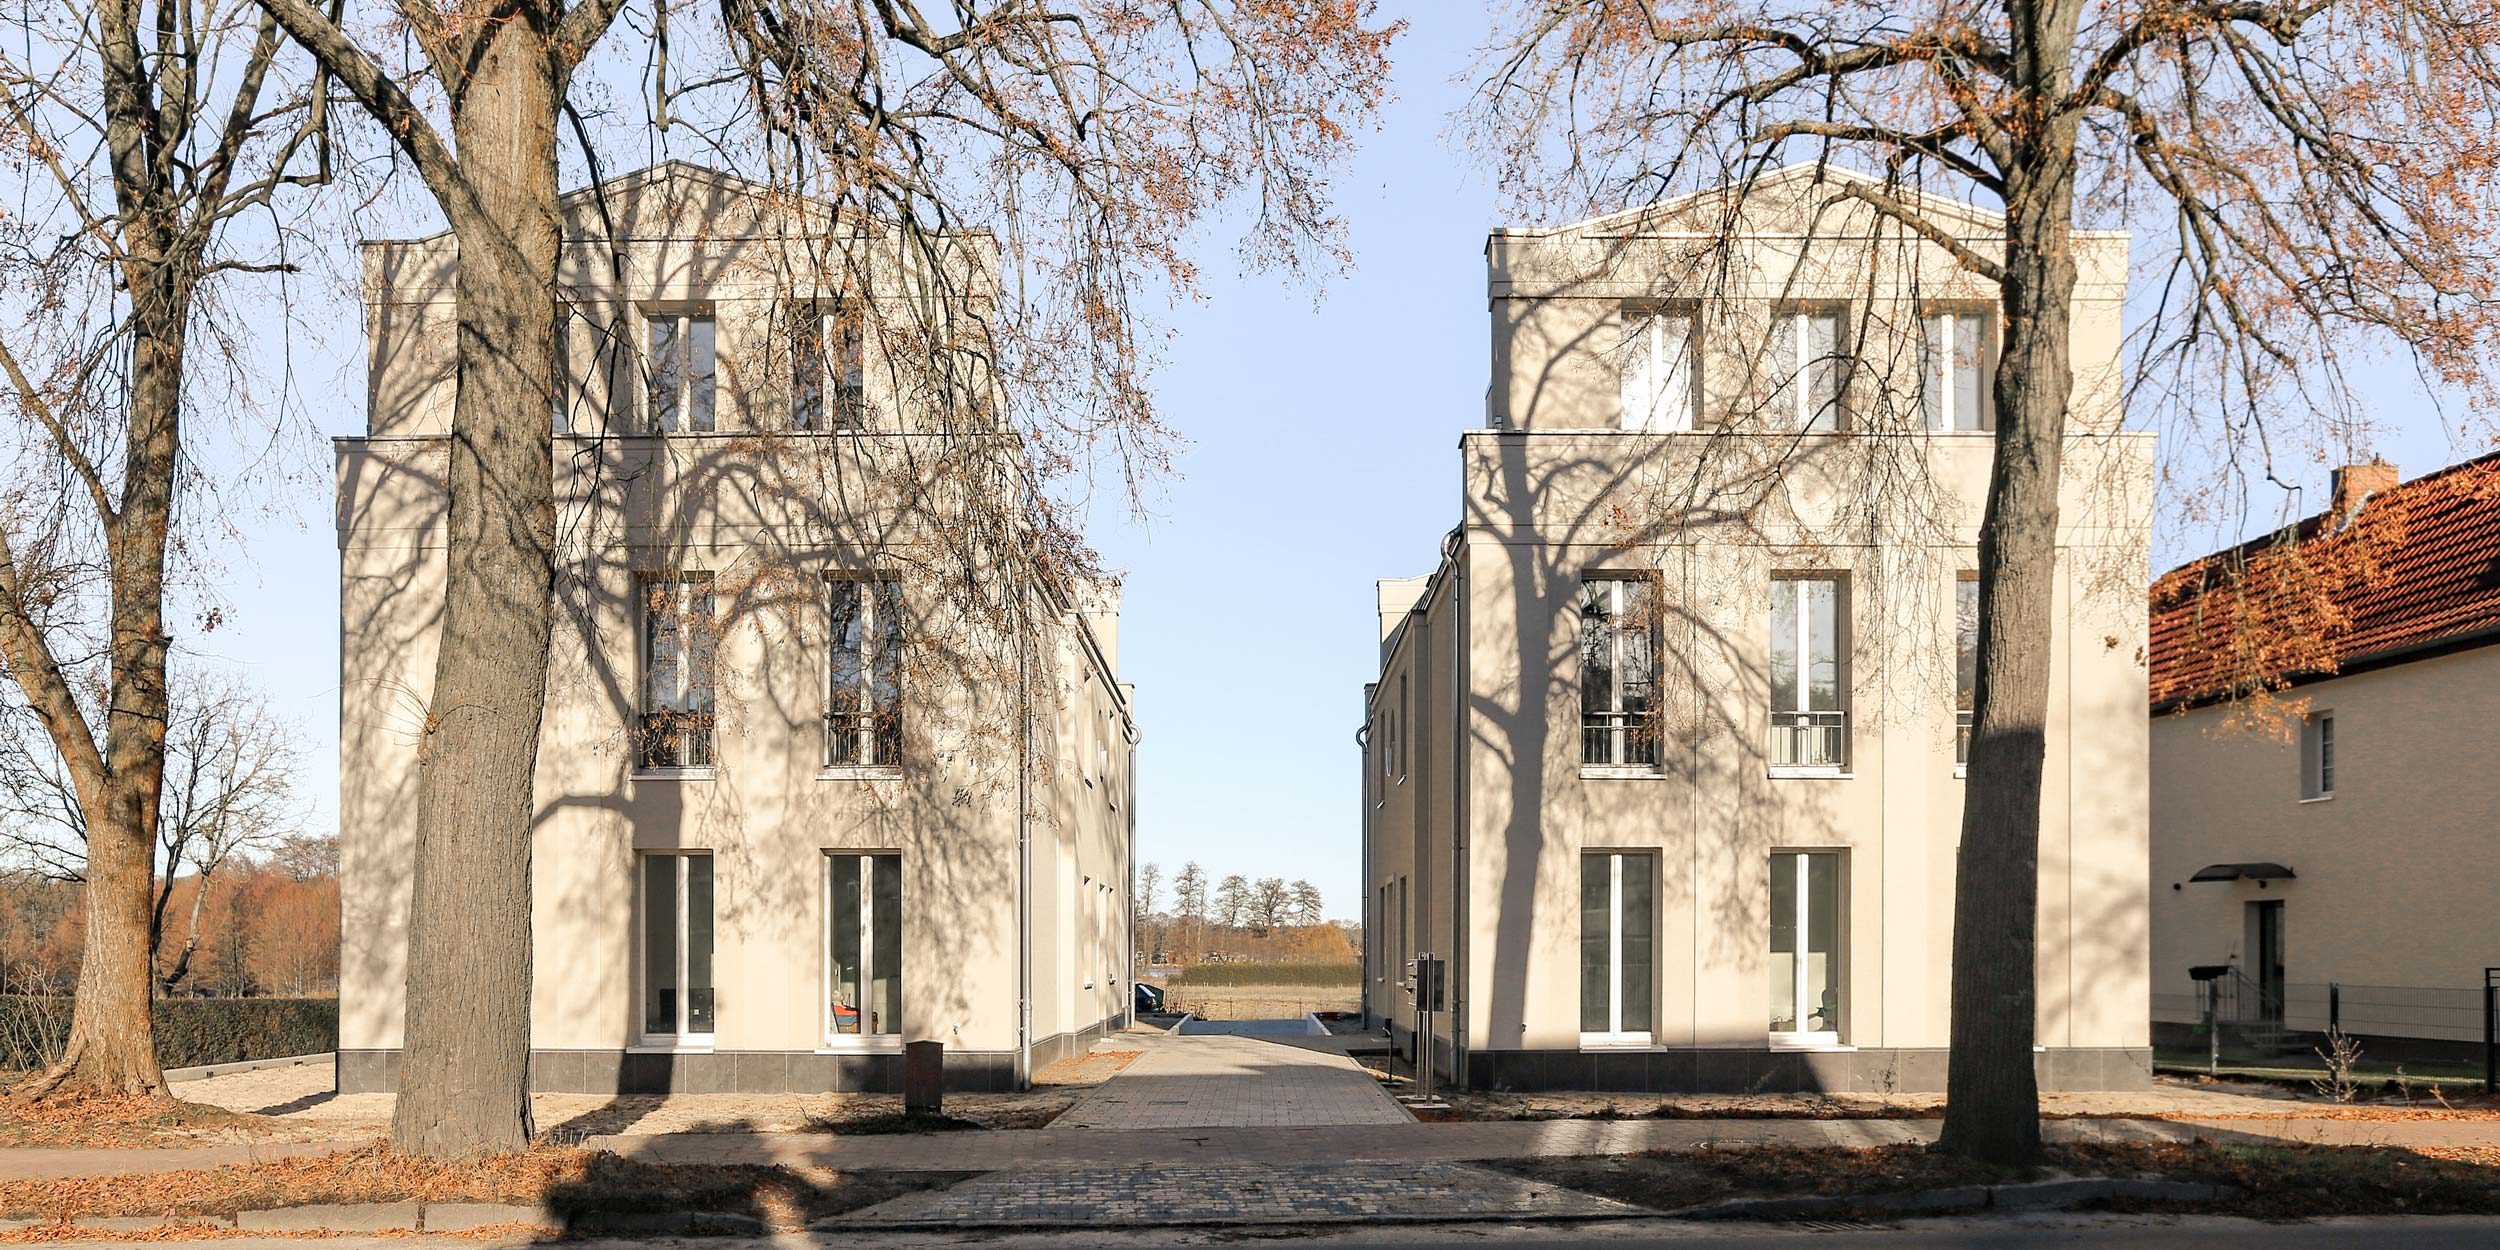 TWINS - Neubau einer Wohnanlage für kostengünstiges Wohnen bei Berlin